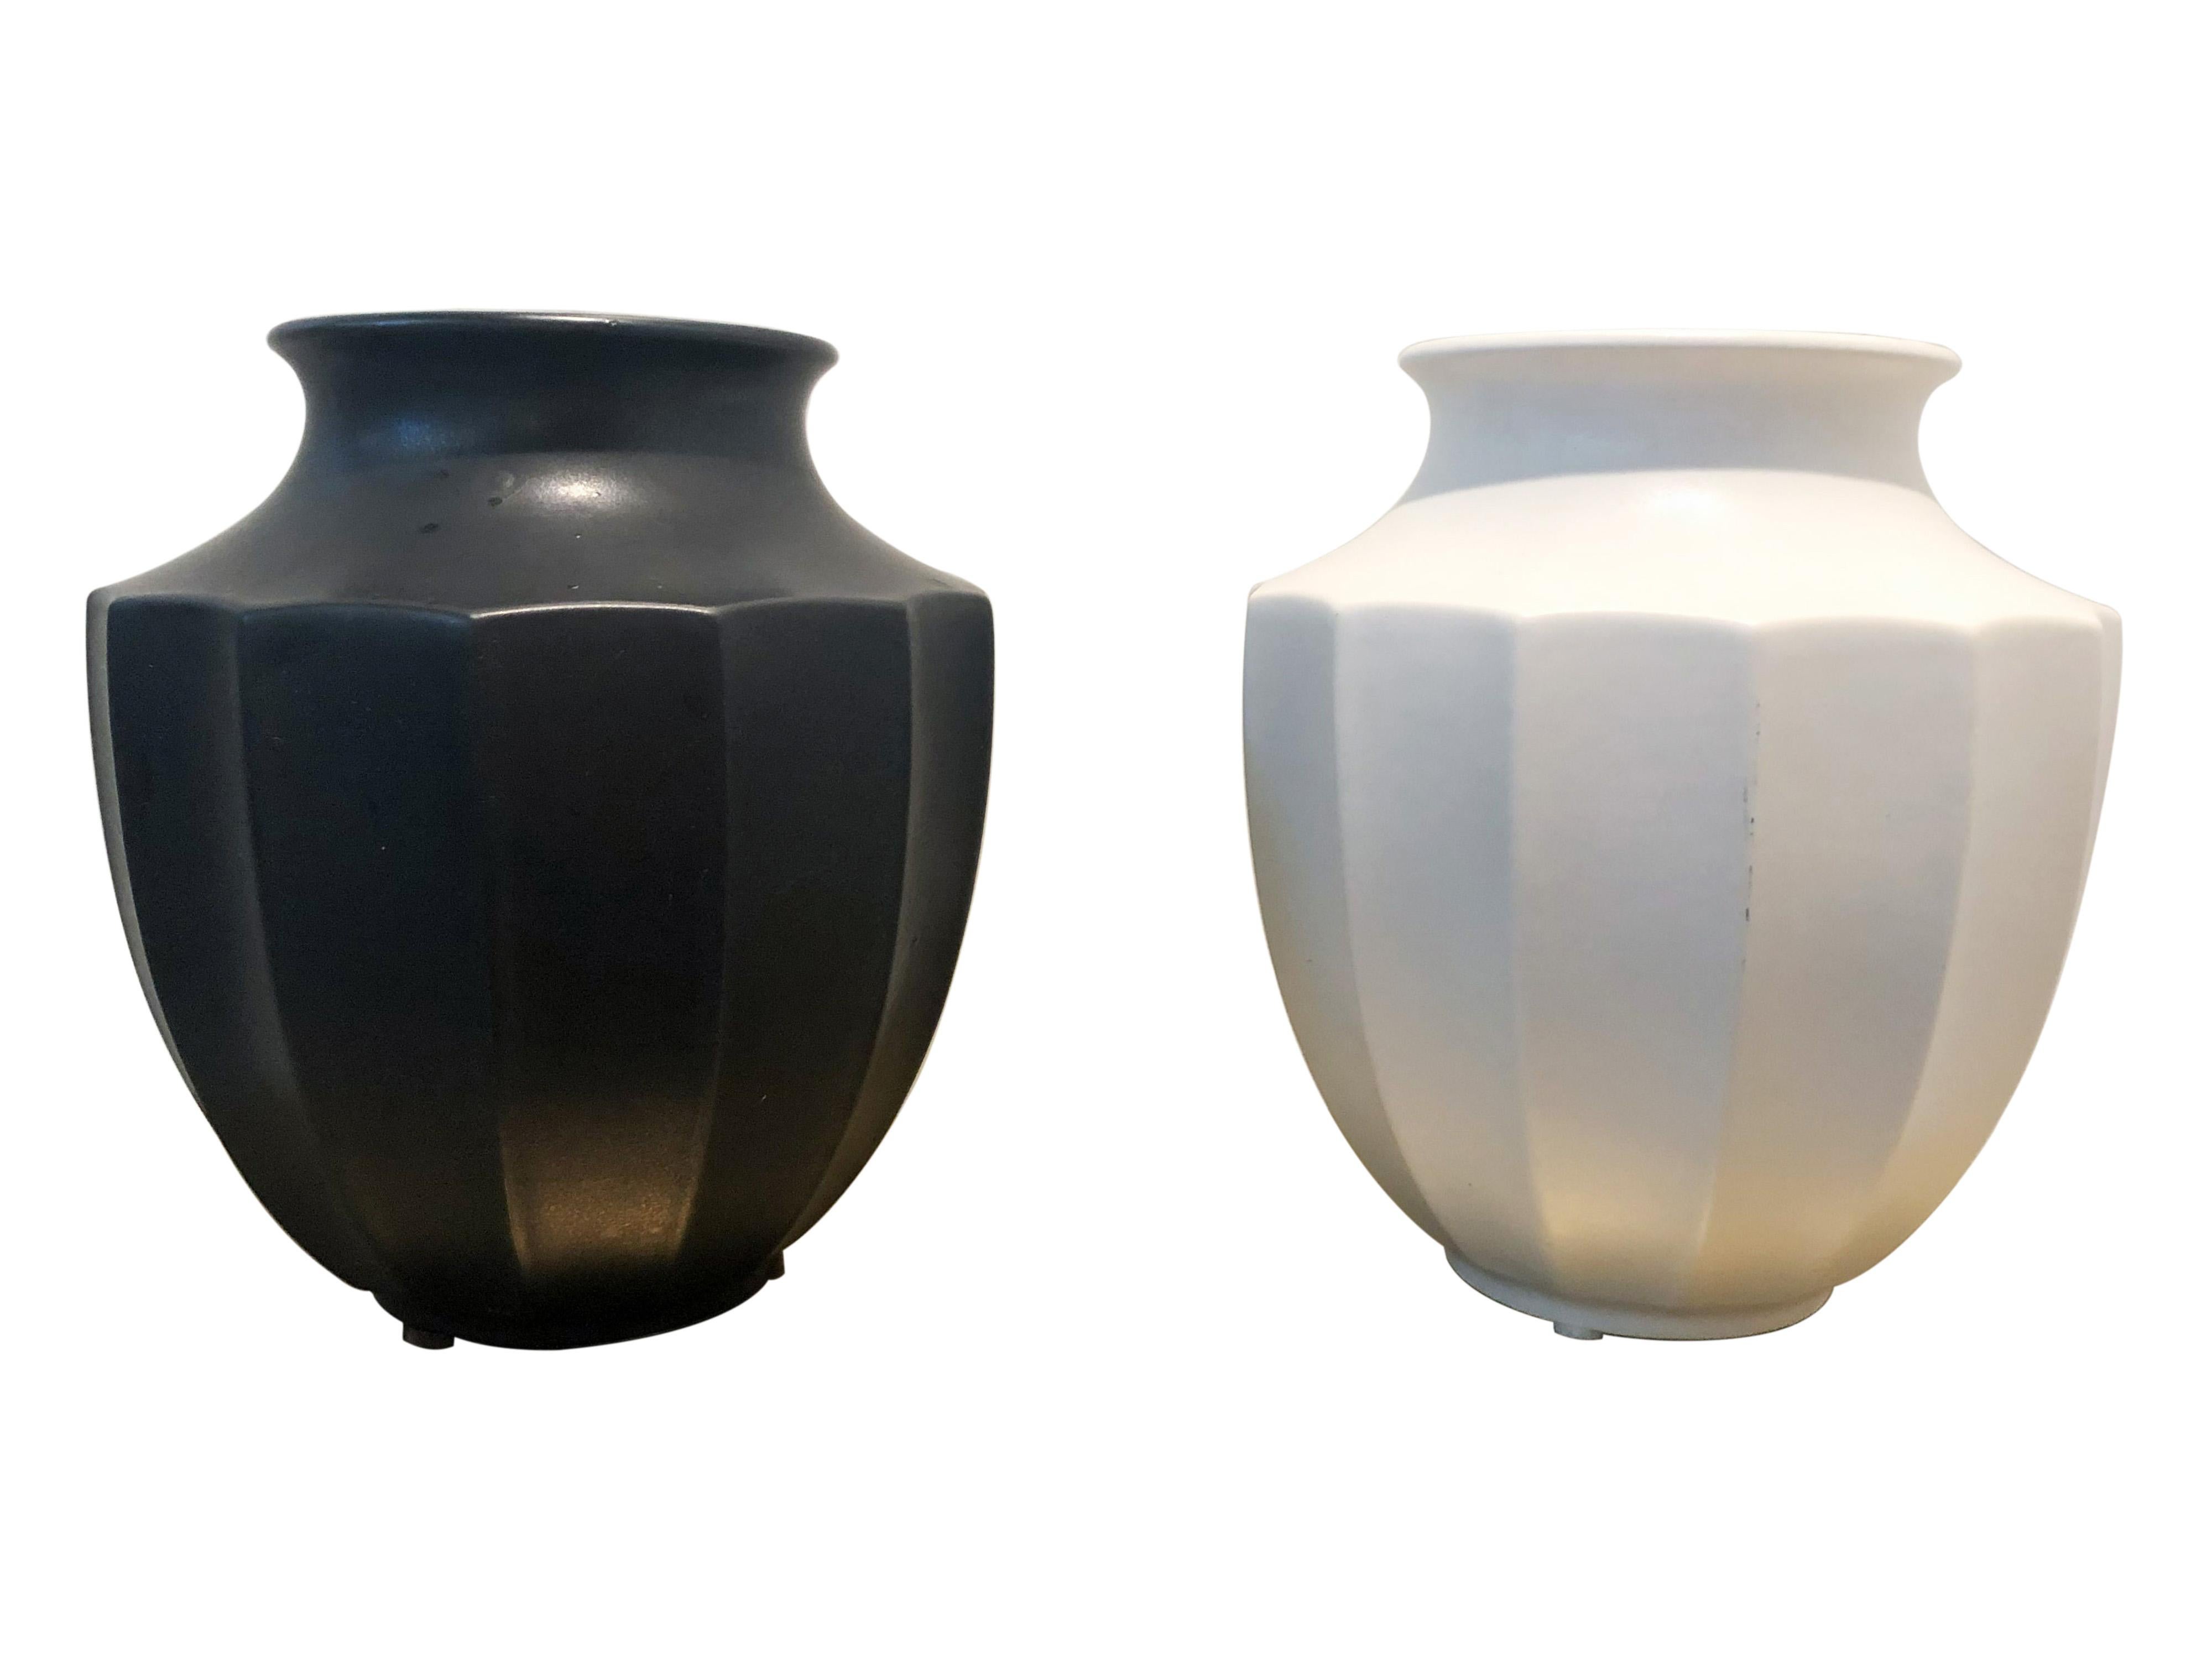 Paire de vases/urnes en céramique noire et blanche du milieu du siècle dernier, aux côtés striés et à la finition mate. Le sommet a un diamètre de 4,25 pouces et le point le plus large un diamètre de 7,5 pouces.